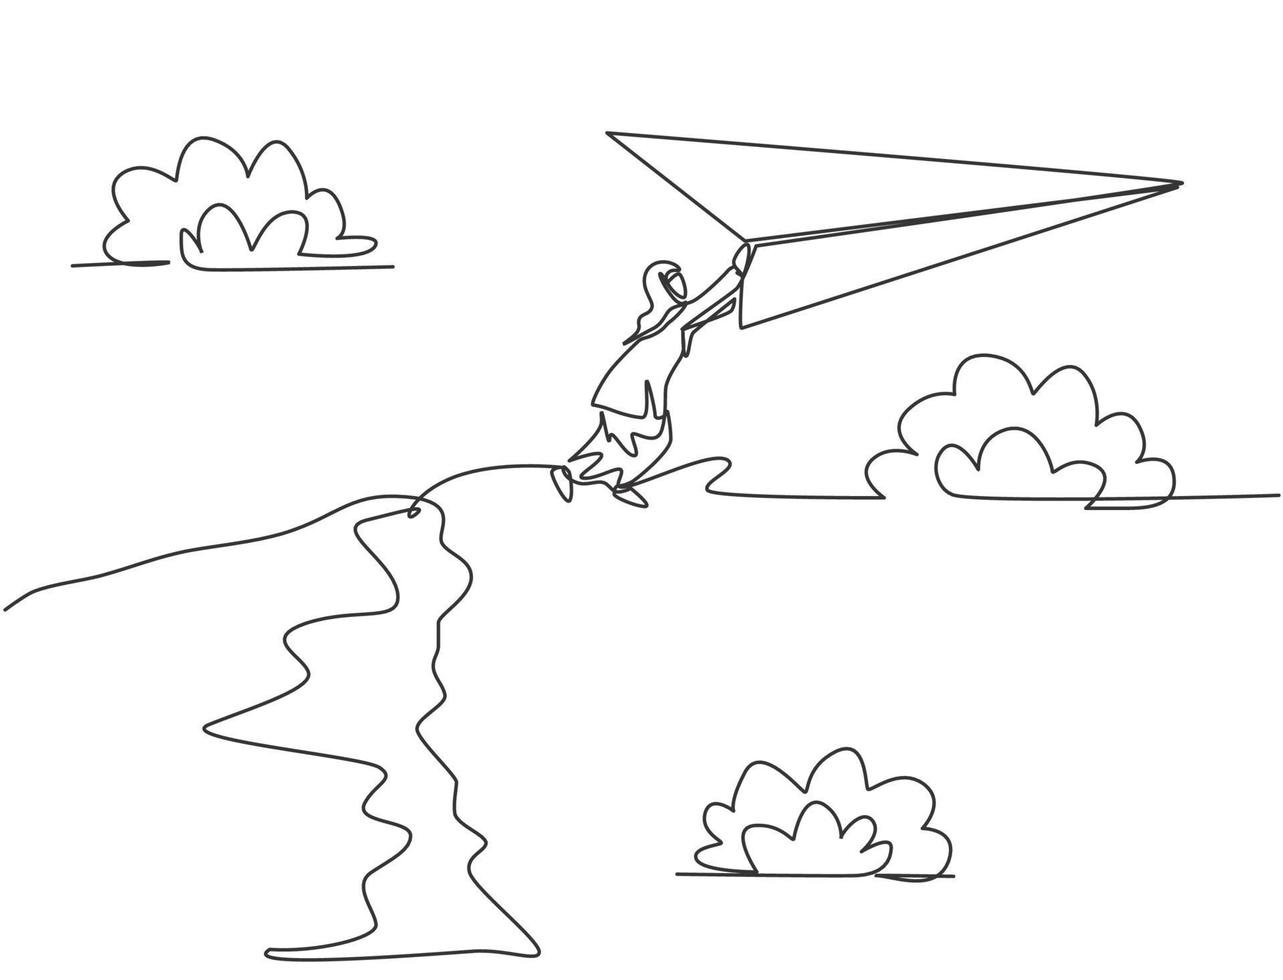 dessin continu d'une ligne jeune travailleuse arabe sautant à un avion en papier volant depuis le sommet de la falaise. Défi commercial. concept de métaphore minimaliste. illustration graphique de vecteur de conception de dessin à une seule ligne